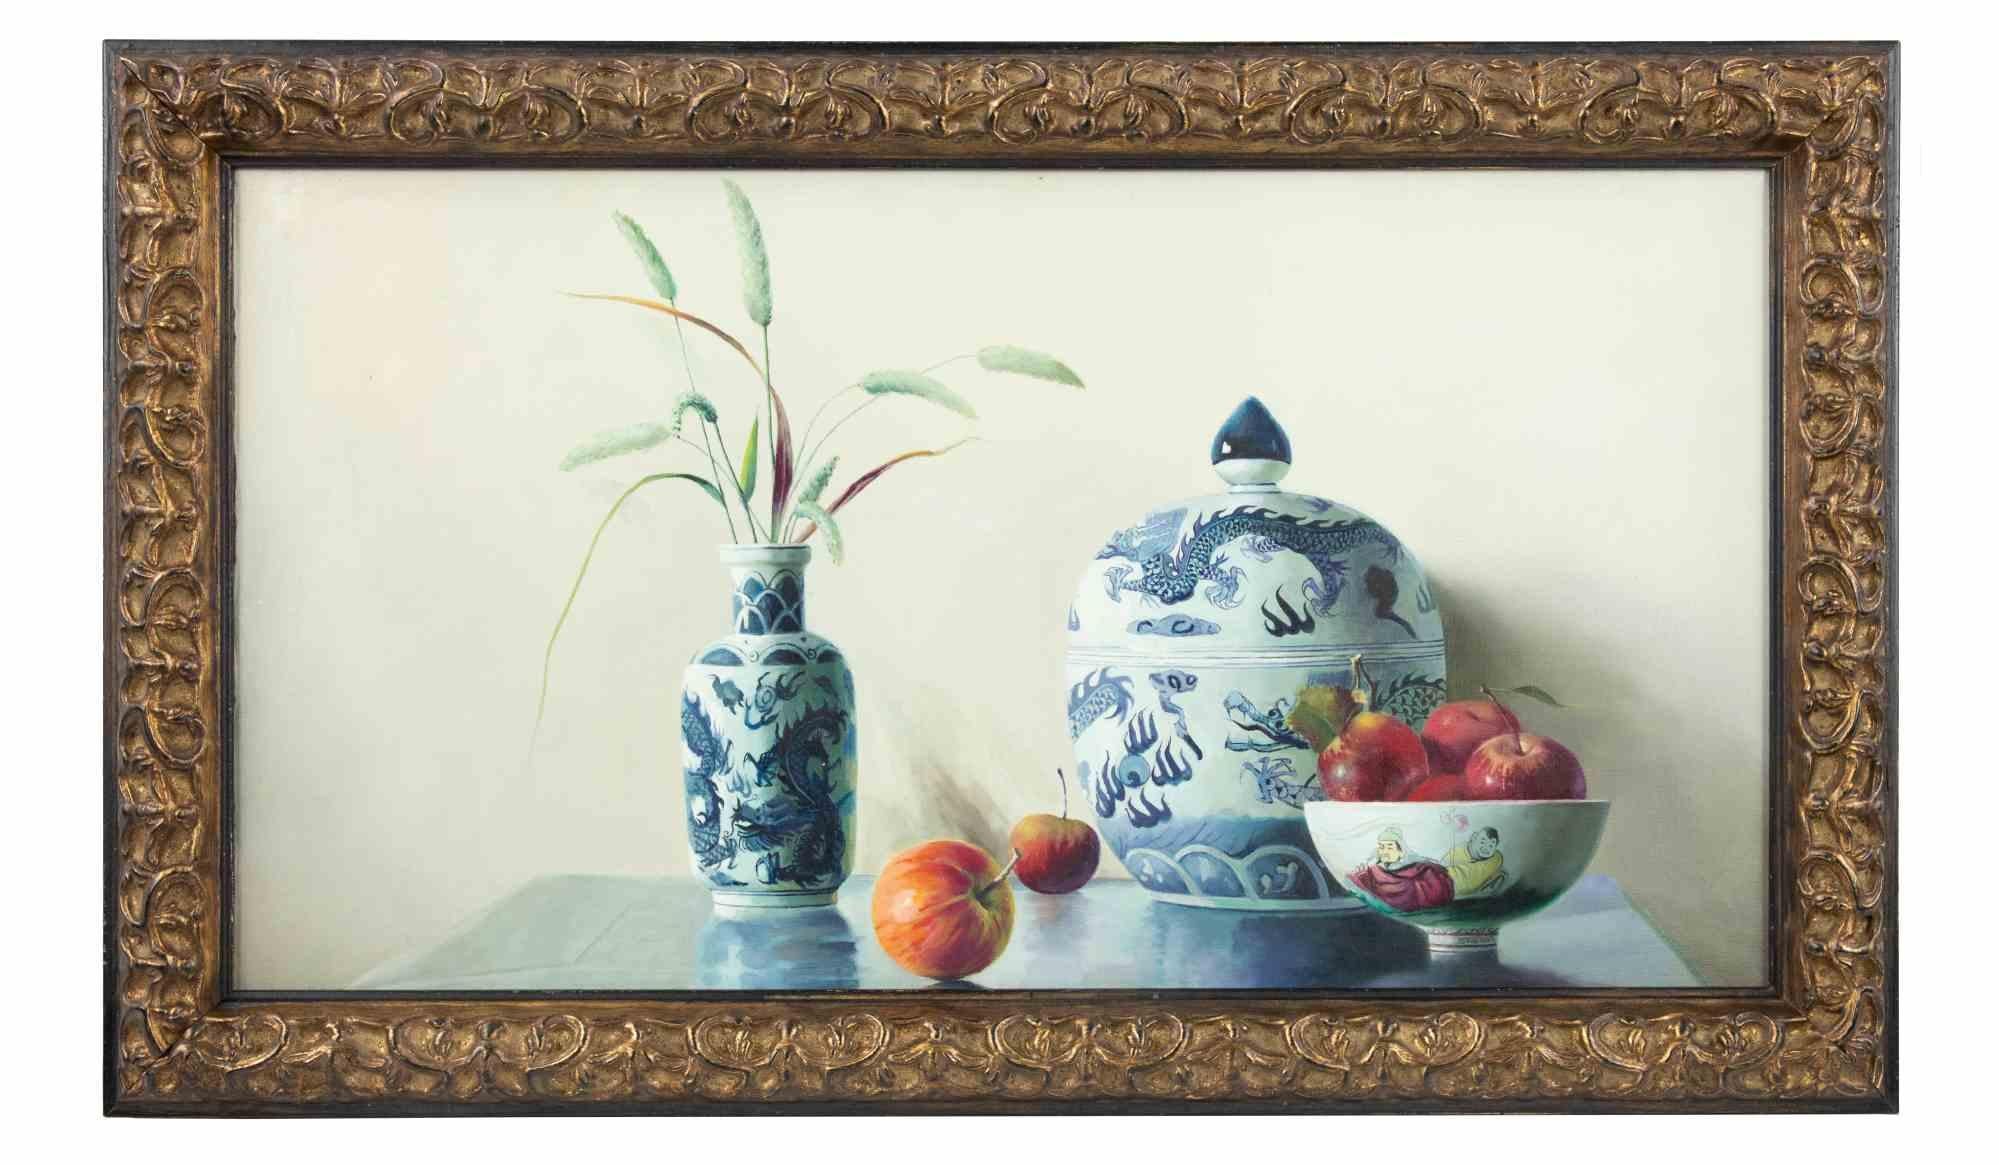 Vases et fruits est une peinture à l'huile originale réalisée en 2006 par Zhang Wei Guang (Miroir).

Belle peinture à l'huile sur toile. 

Inclut le cadre.

Signé et daté à la main au dos

Zhang Wei Guang, également appelé "miroir", est né à Helong